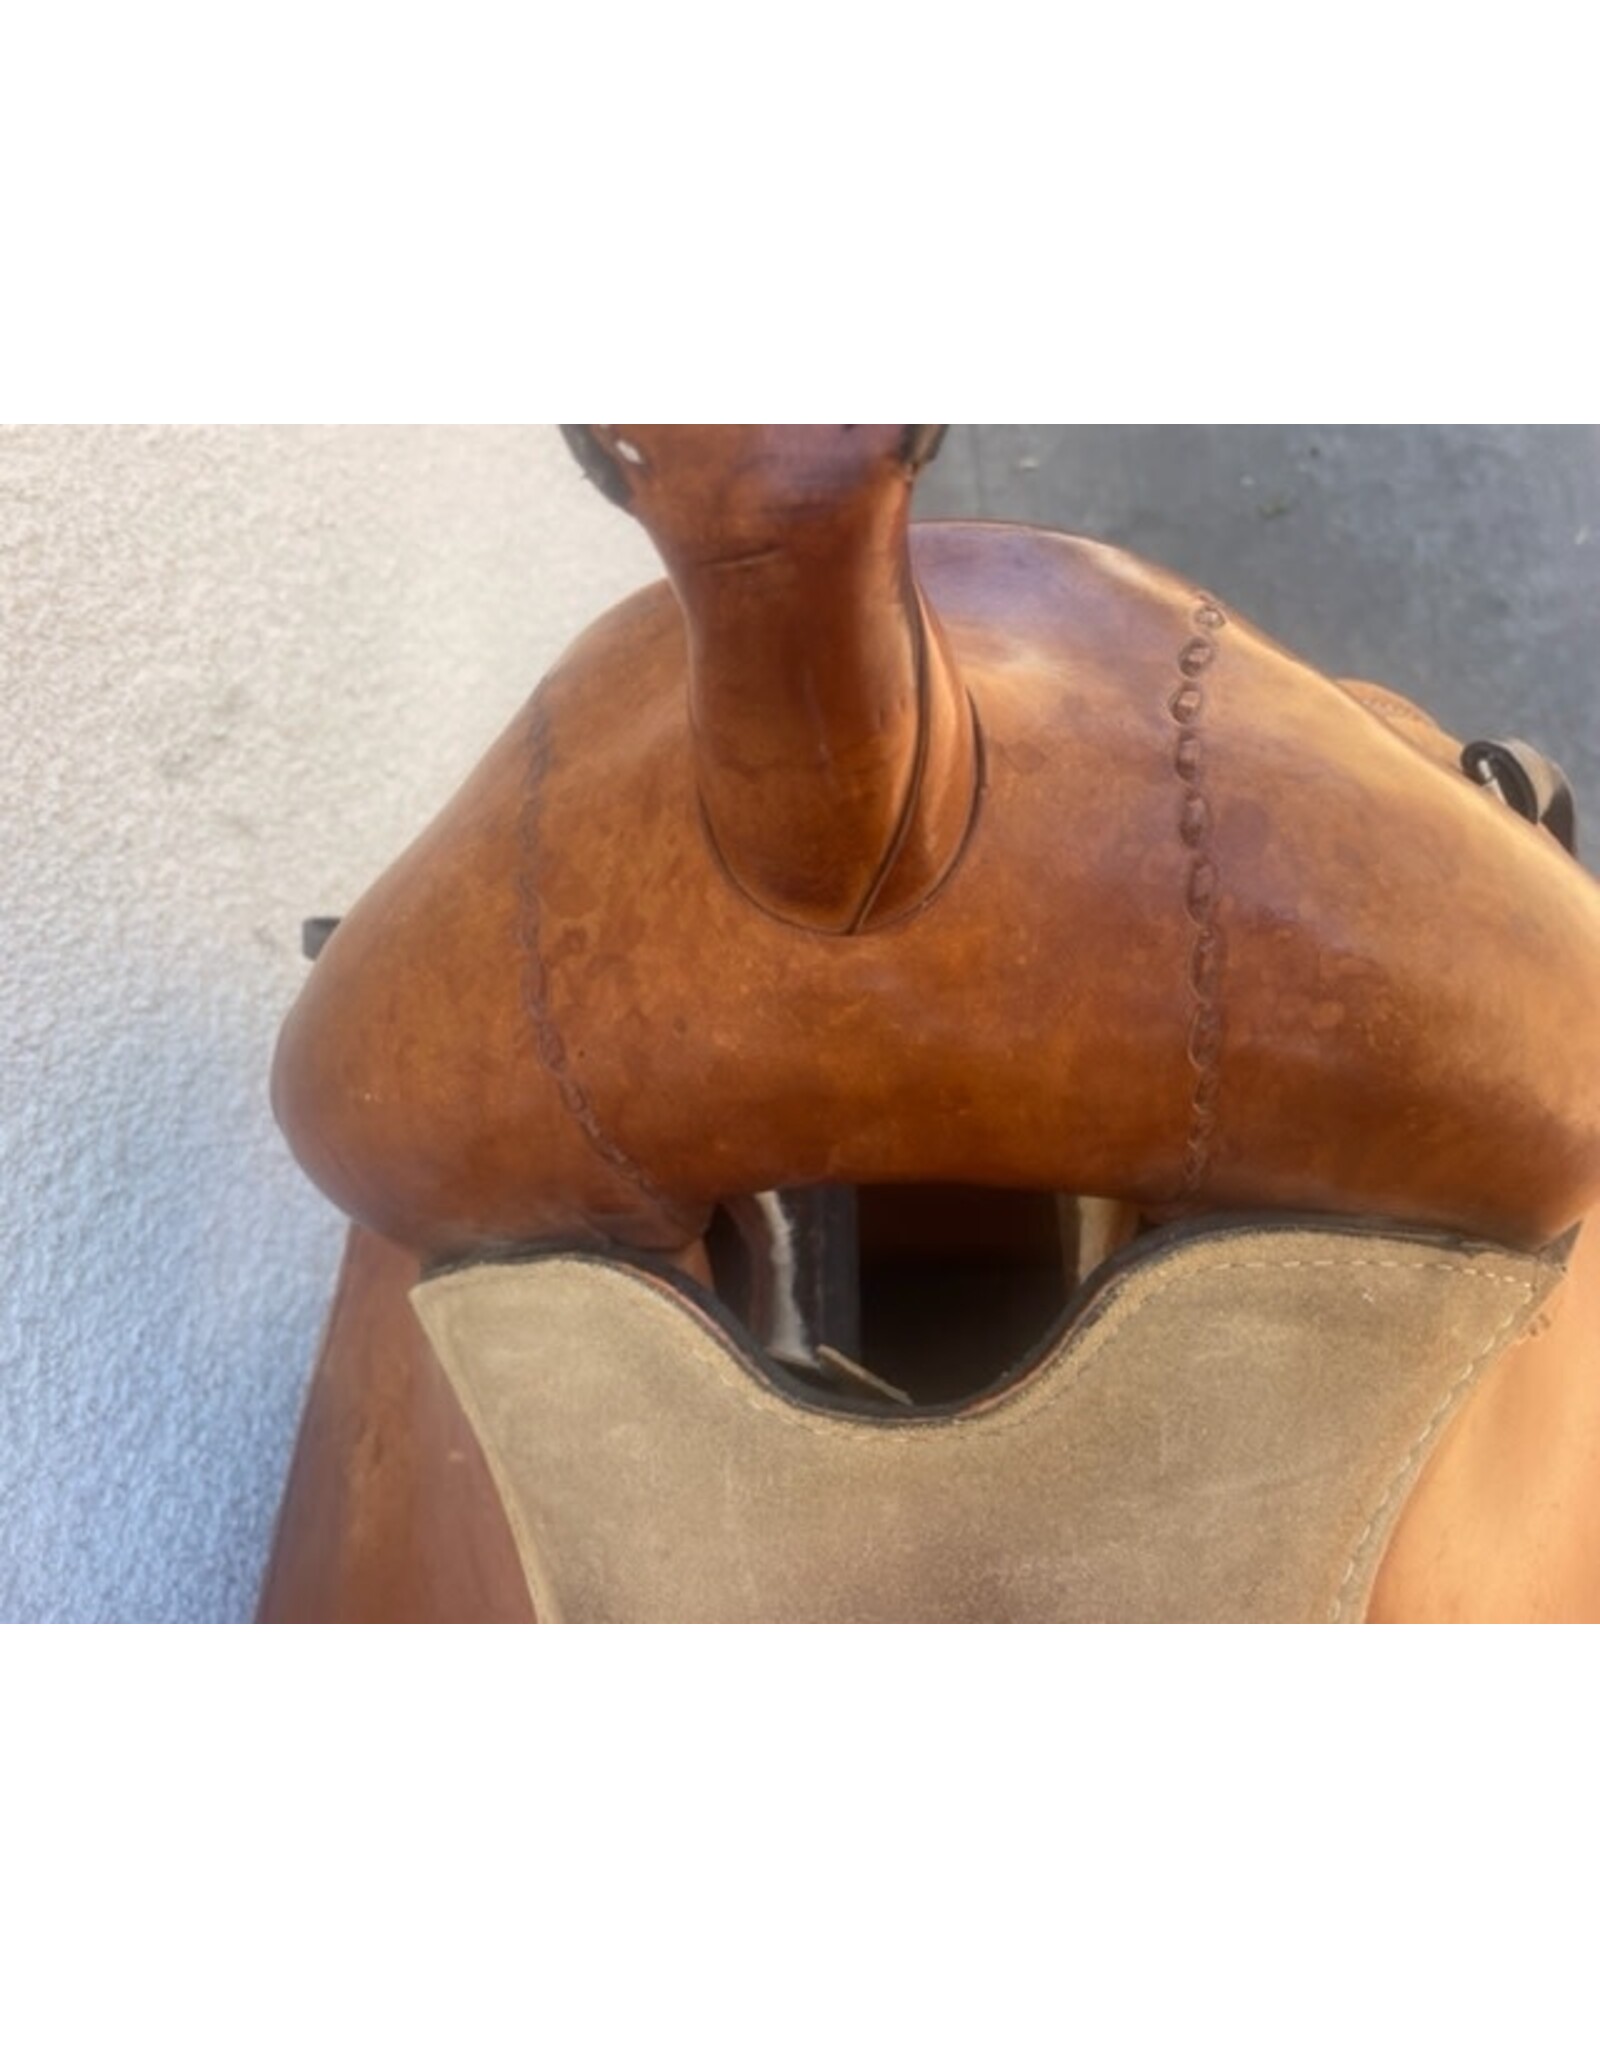 Dakota Western saddle, 15", Full quarter Bars